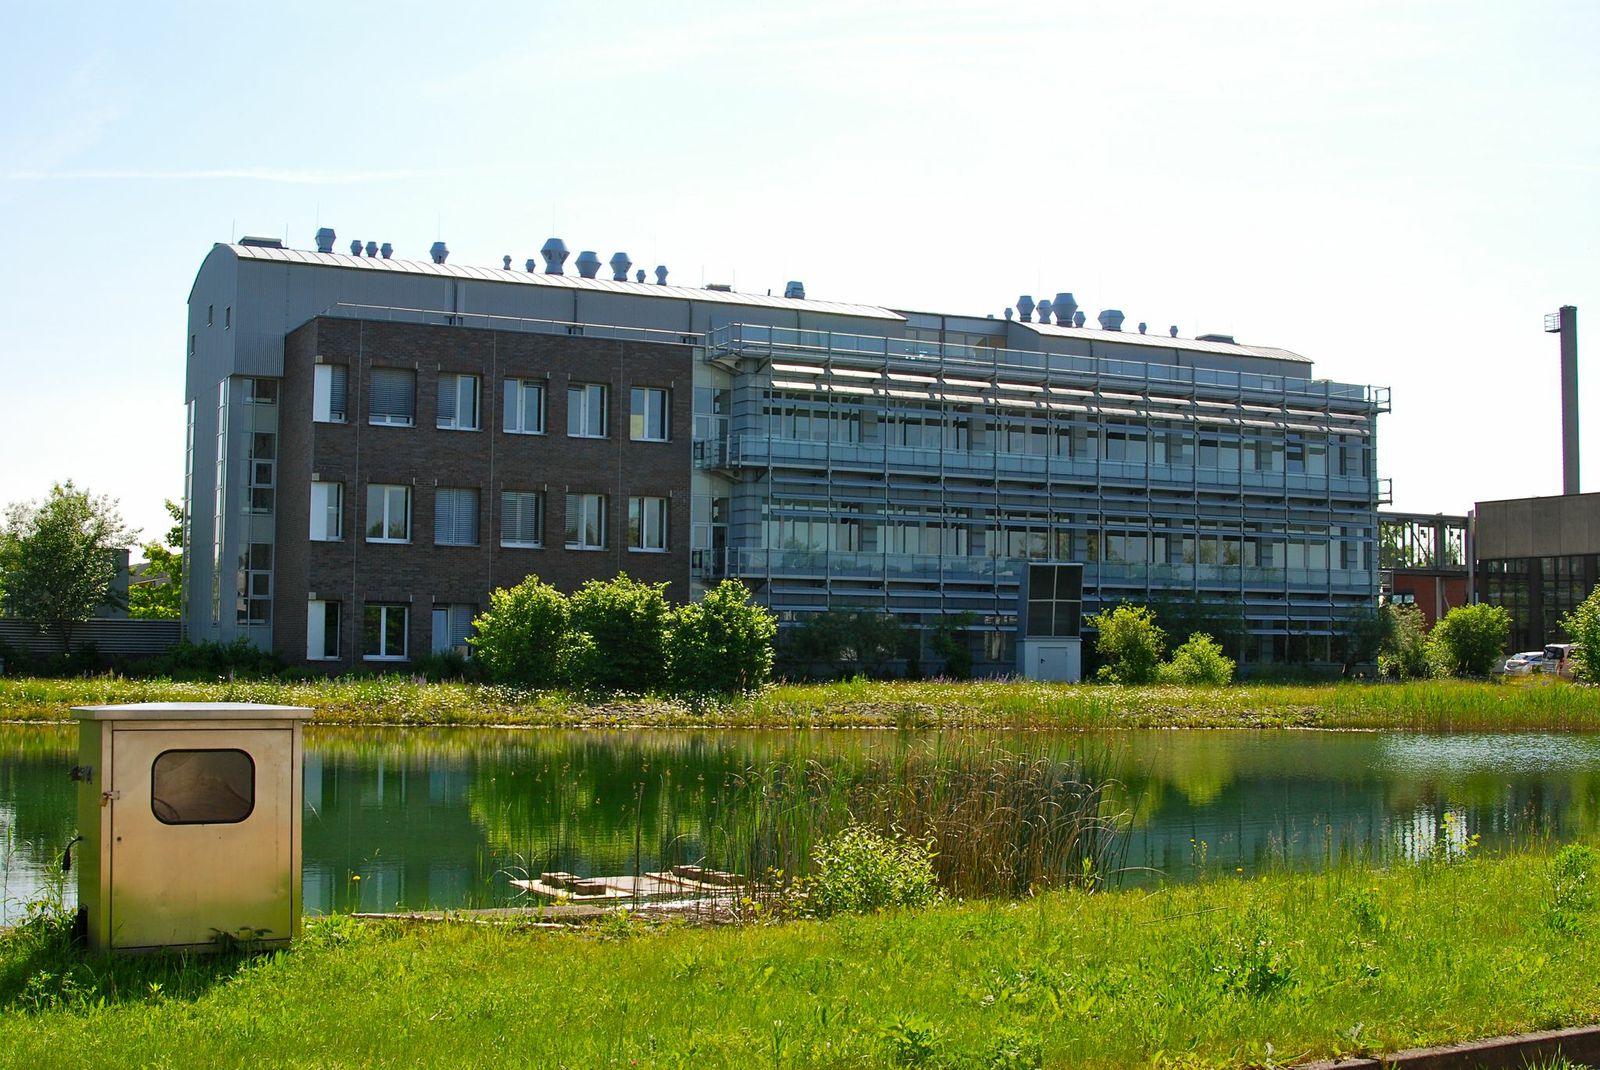 Dreistöckiges, langgezogenes modernes Bürogebäude, davor ein Fluss oder Kanal mit grasbewachsenen Ufern